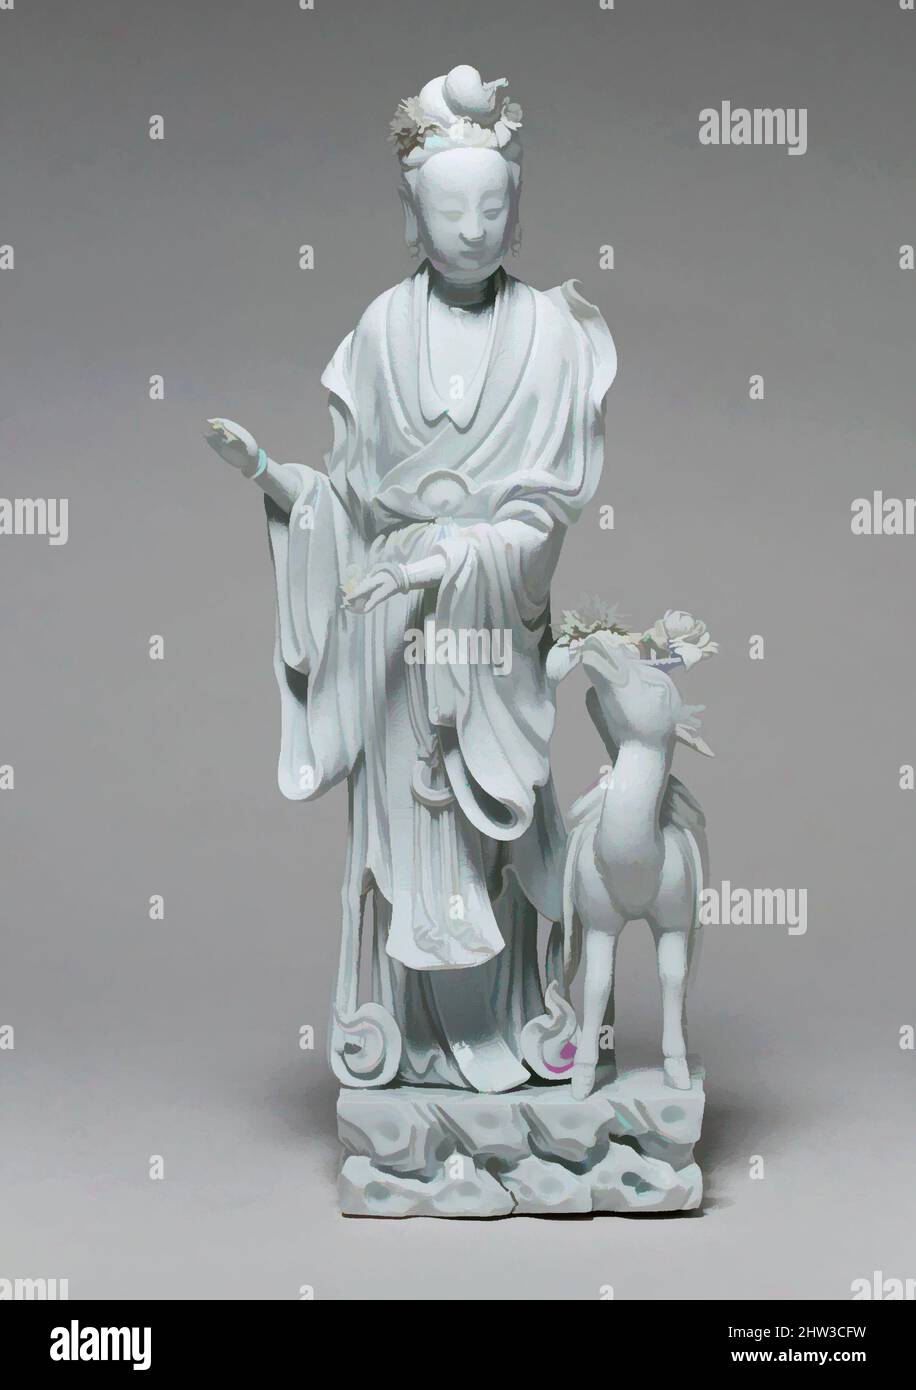 Arte ispirata al Magu immortale con un cervo, dinastia Qing (1644–1911), fine 19th–inizio 20th secolo, Cina, porcellane con glassa trasparente (Dehua ware, provincia Fujian), H. 15 1/2 in. (39,4 cm); W. 5" (12,7 cm); D. 4" (10,2 cm), Ceramica, su Xuejin (1869–1919), il sigillo quadrato, opere classiche modernizzate da Artotop con un tuffo di modernità. Forme, colore e valore, impatto visivo accattivante sulle emozioni artistiche attraverso la libertà delle opere d'arte in modo contemporaneo. Un messaggio senza tempo che persegue una nuova direzione selvaggiamente creativa. Artisti che si rivolgono al supporto digitale e creano l'NFT Artotop Foto Stock